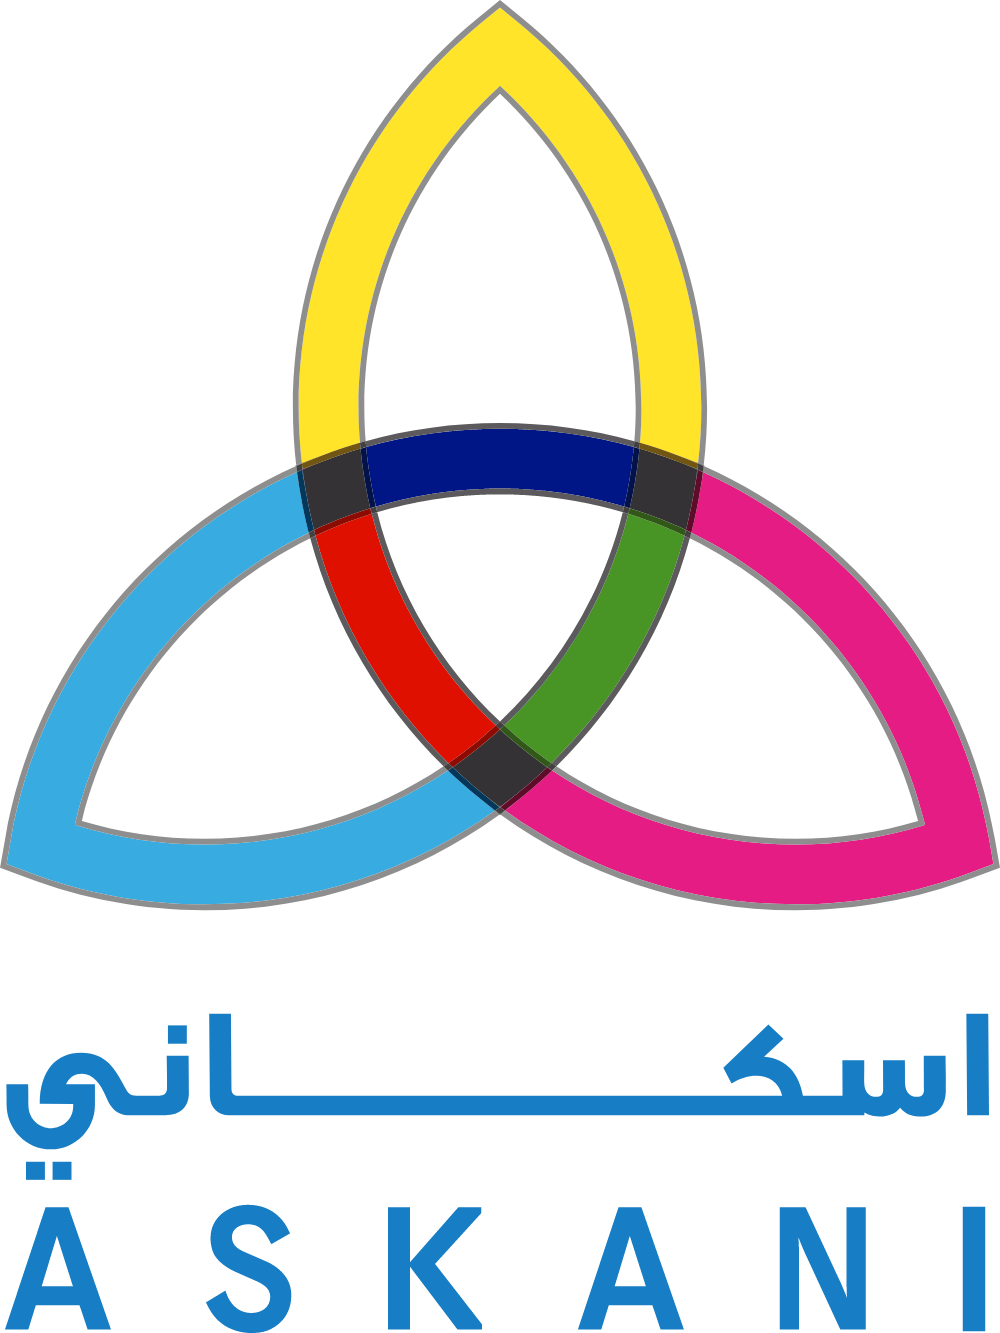 Askani Advertising Logo Logos